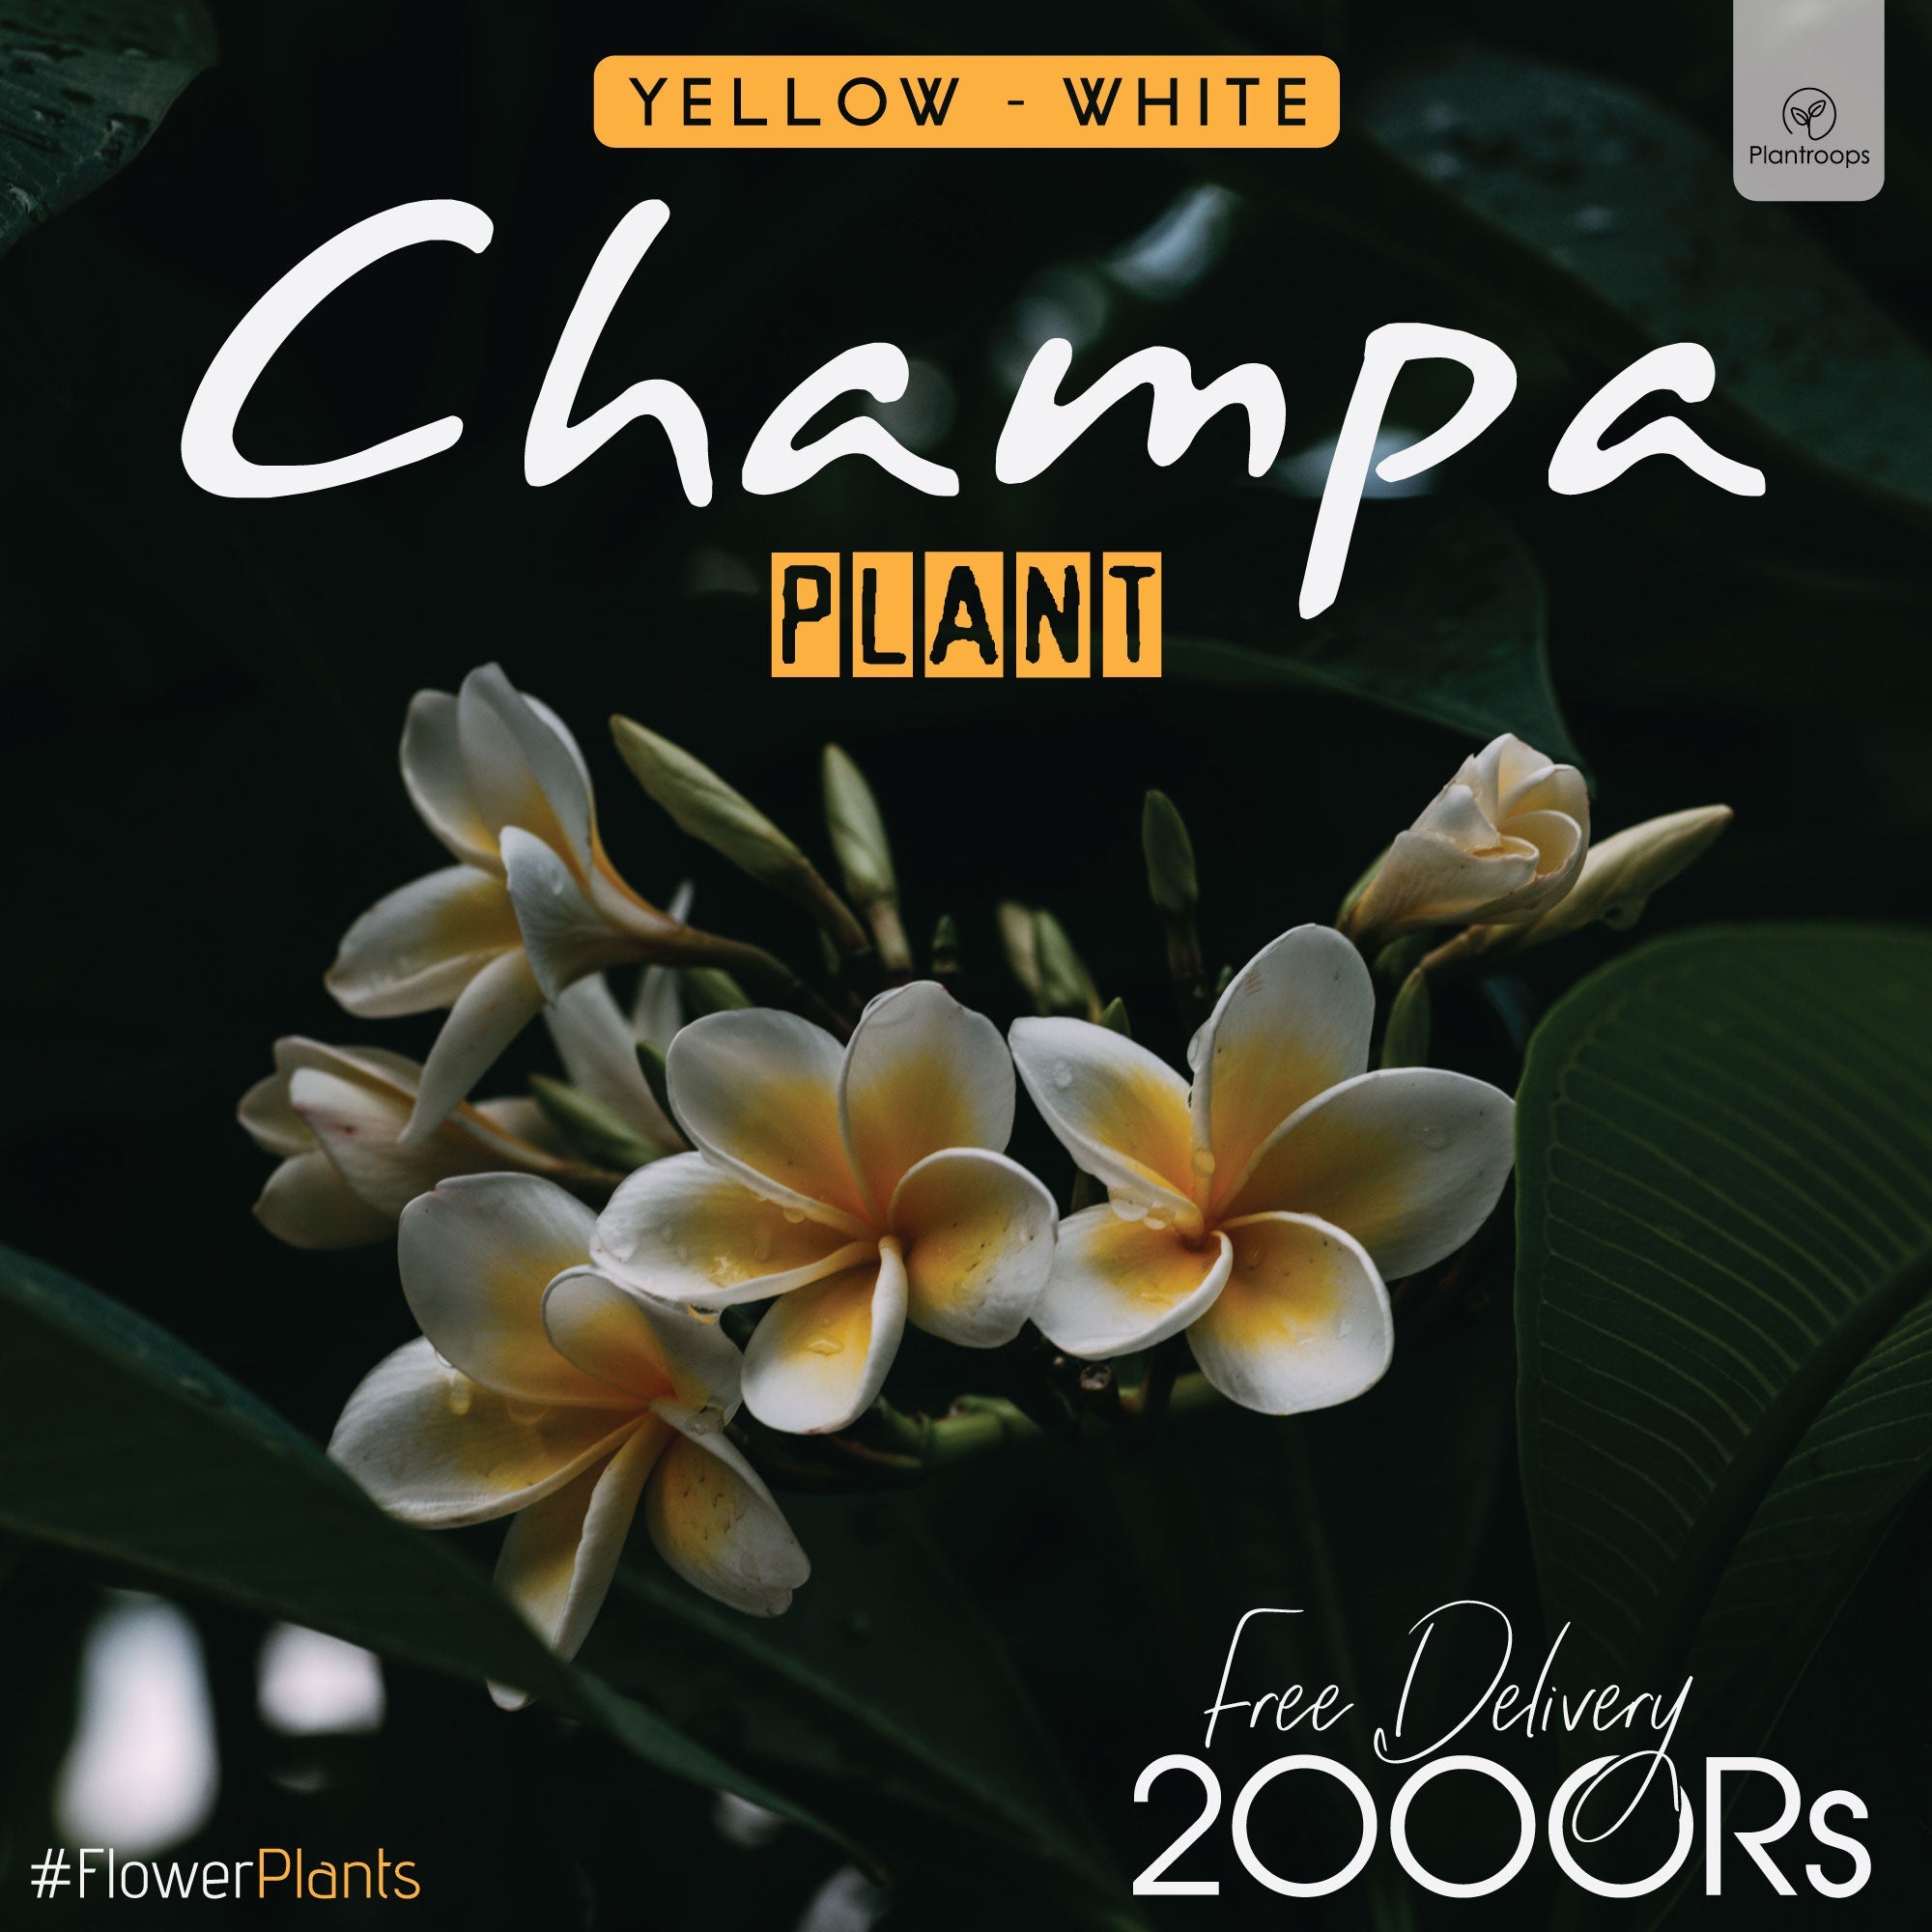 WHITE - YELLOW PLUMERIA / CHAMPA FLOWER PLANT